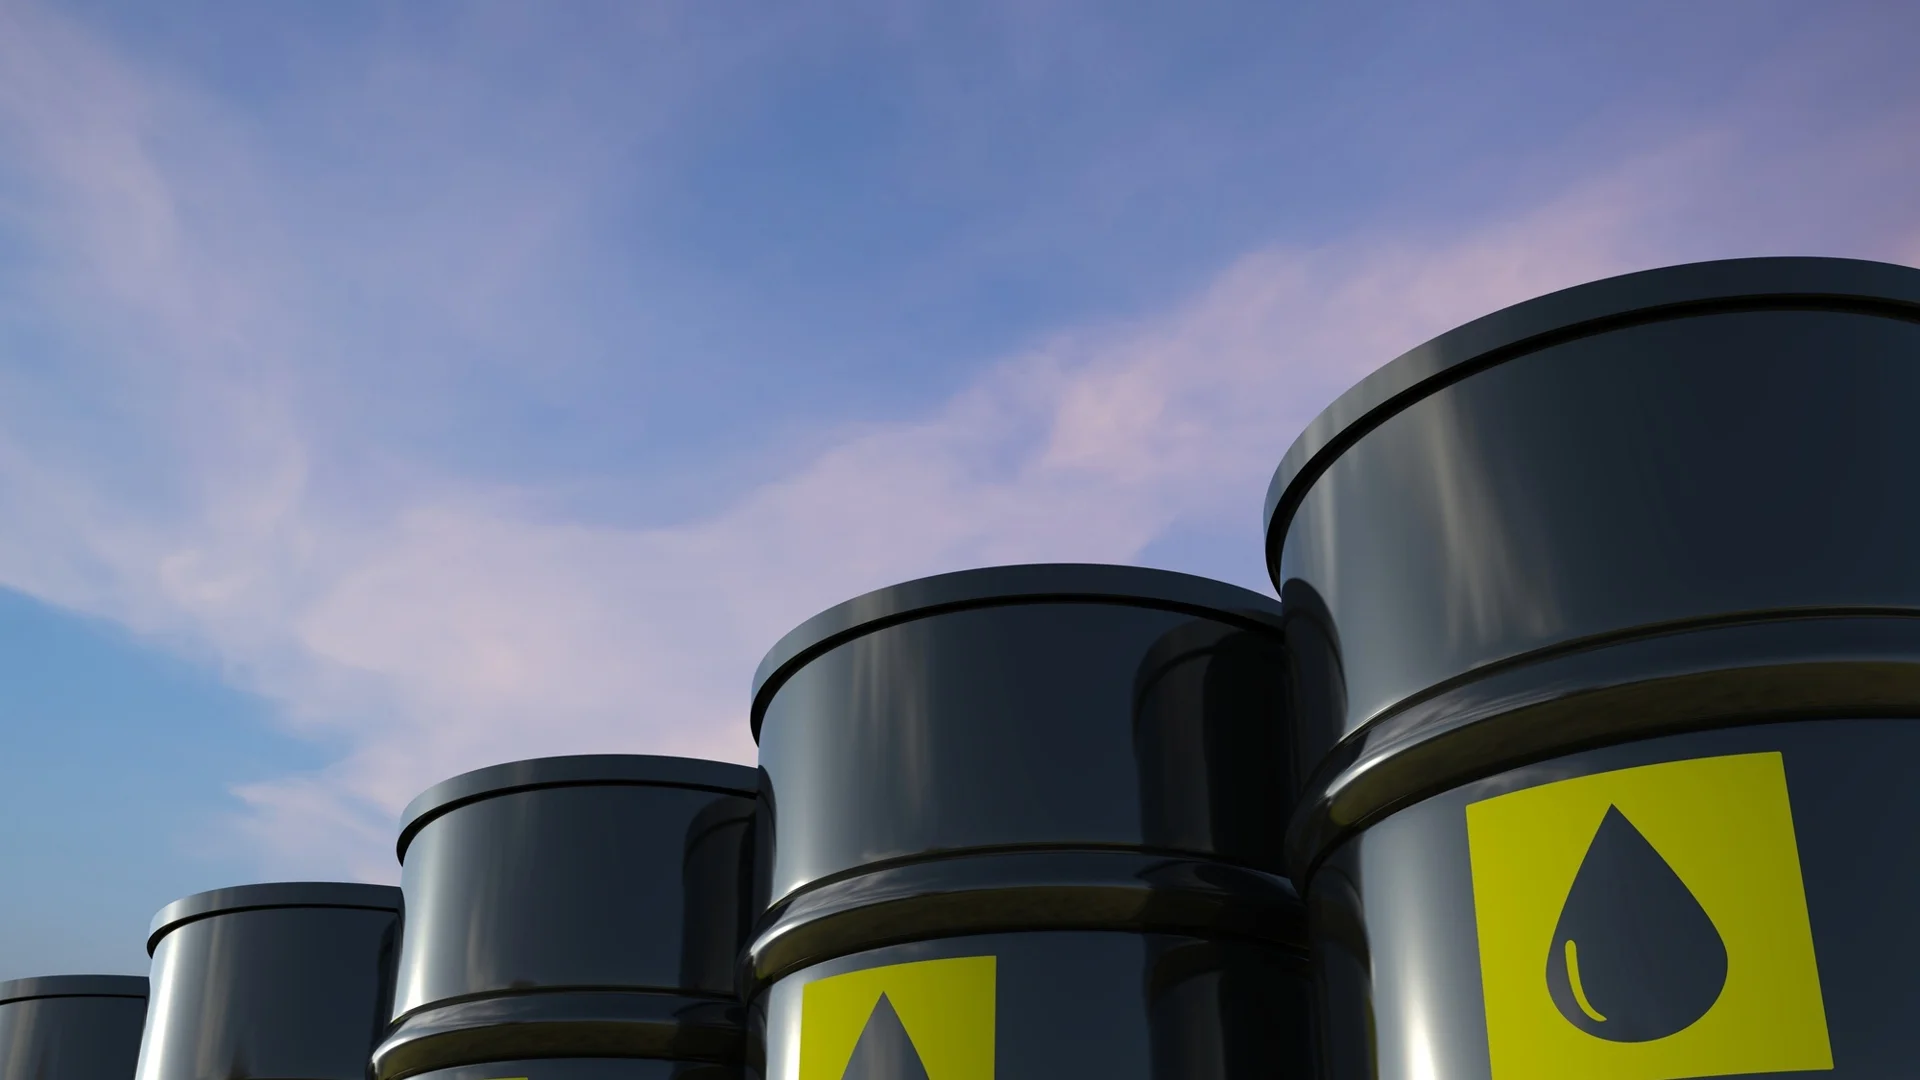 Държавният резерв спечели дело в съда на ЕС срещу петролни компании